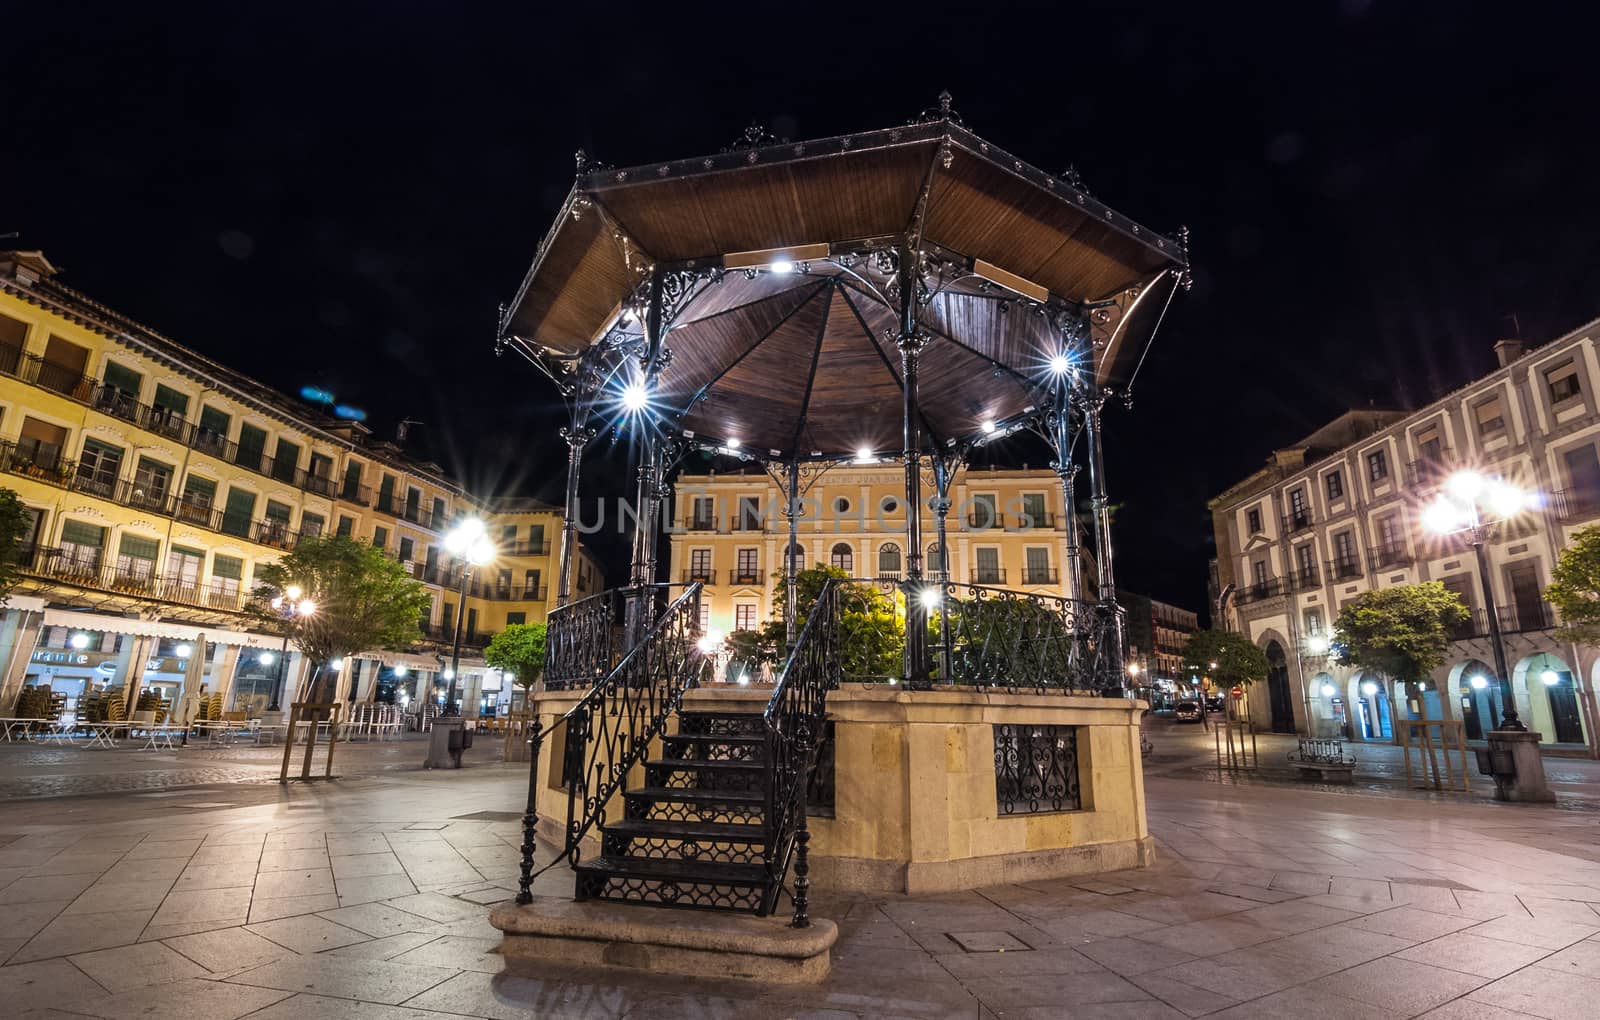 A solo gazebo in the Segovia market square at night.